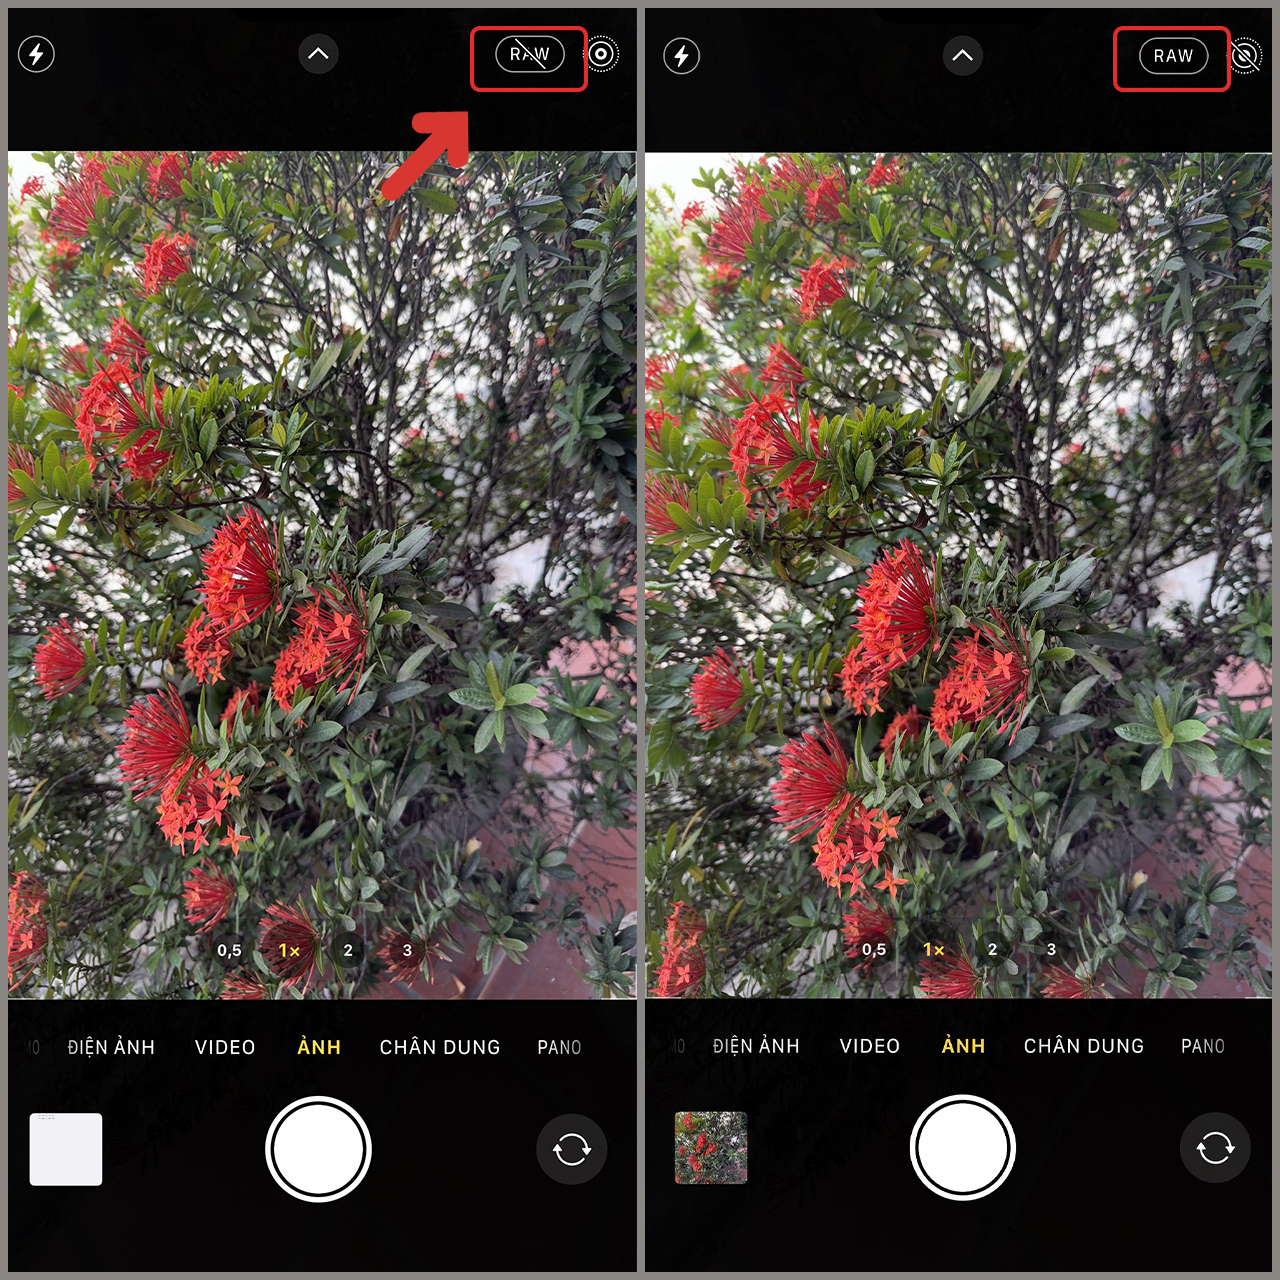 Cách chụp ảnh 48 MP trên iPhone 14 Pro, iPhone 14 Pro Max cực kỳ đẹp